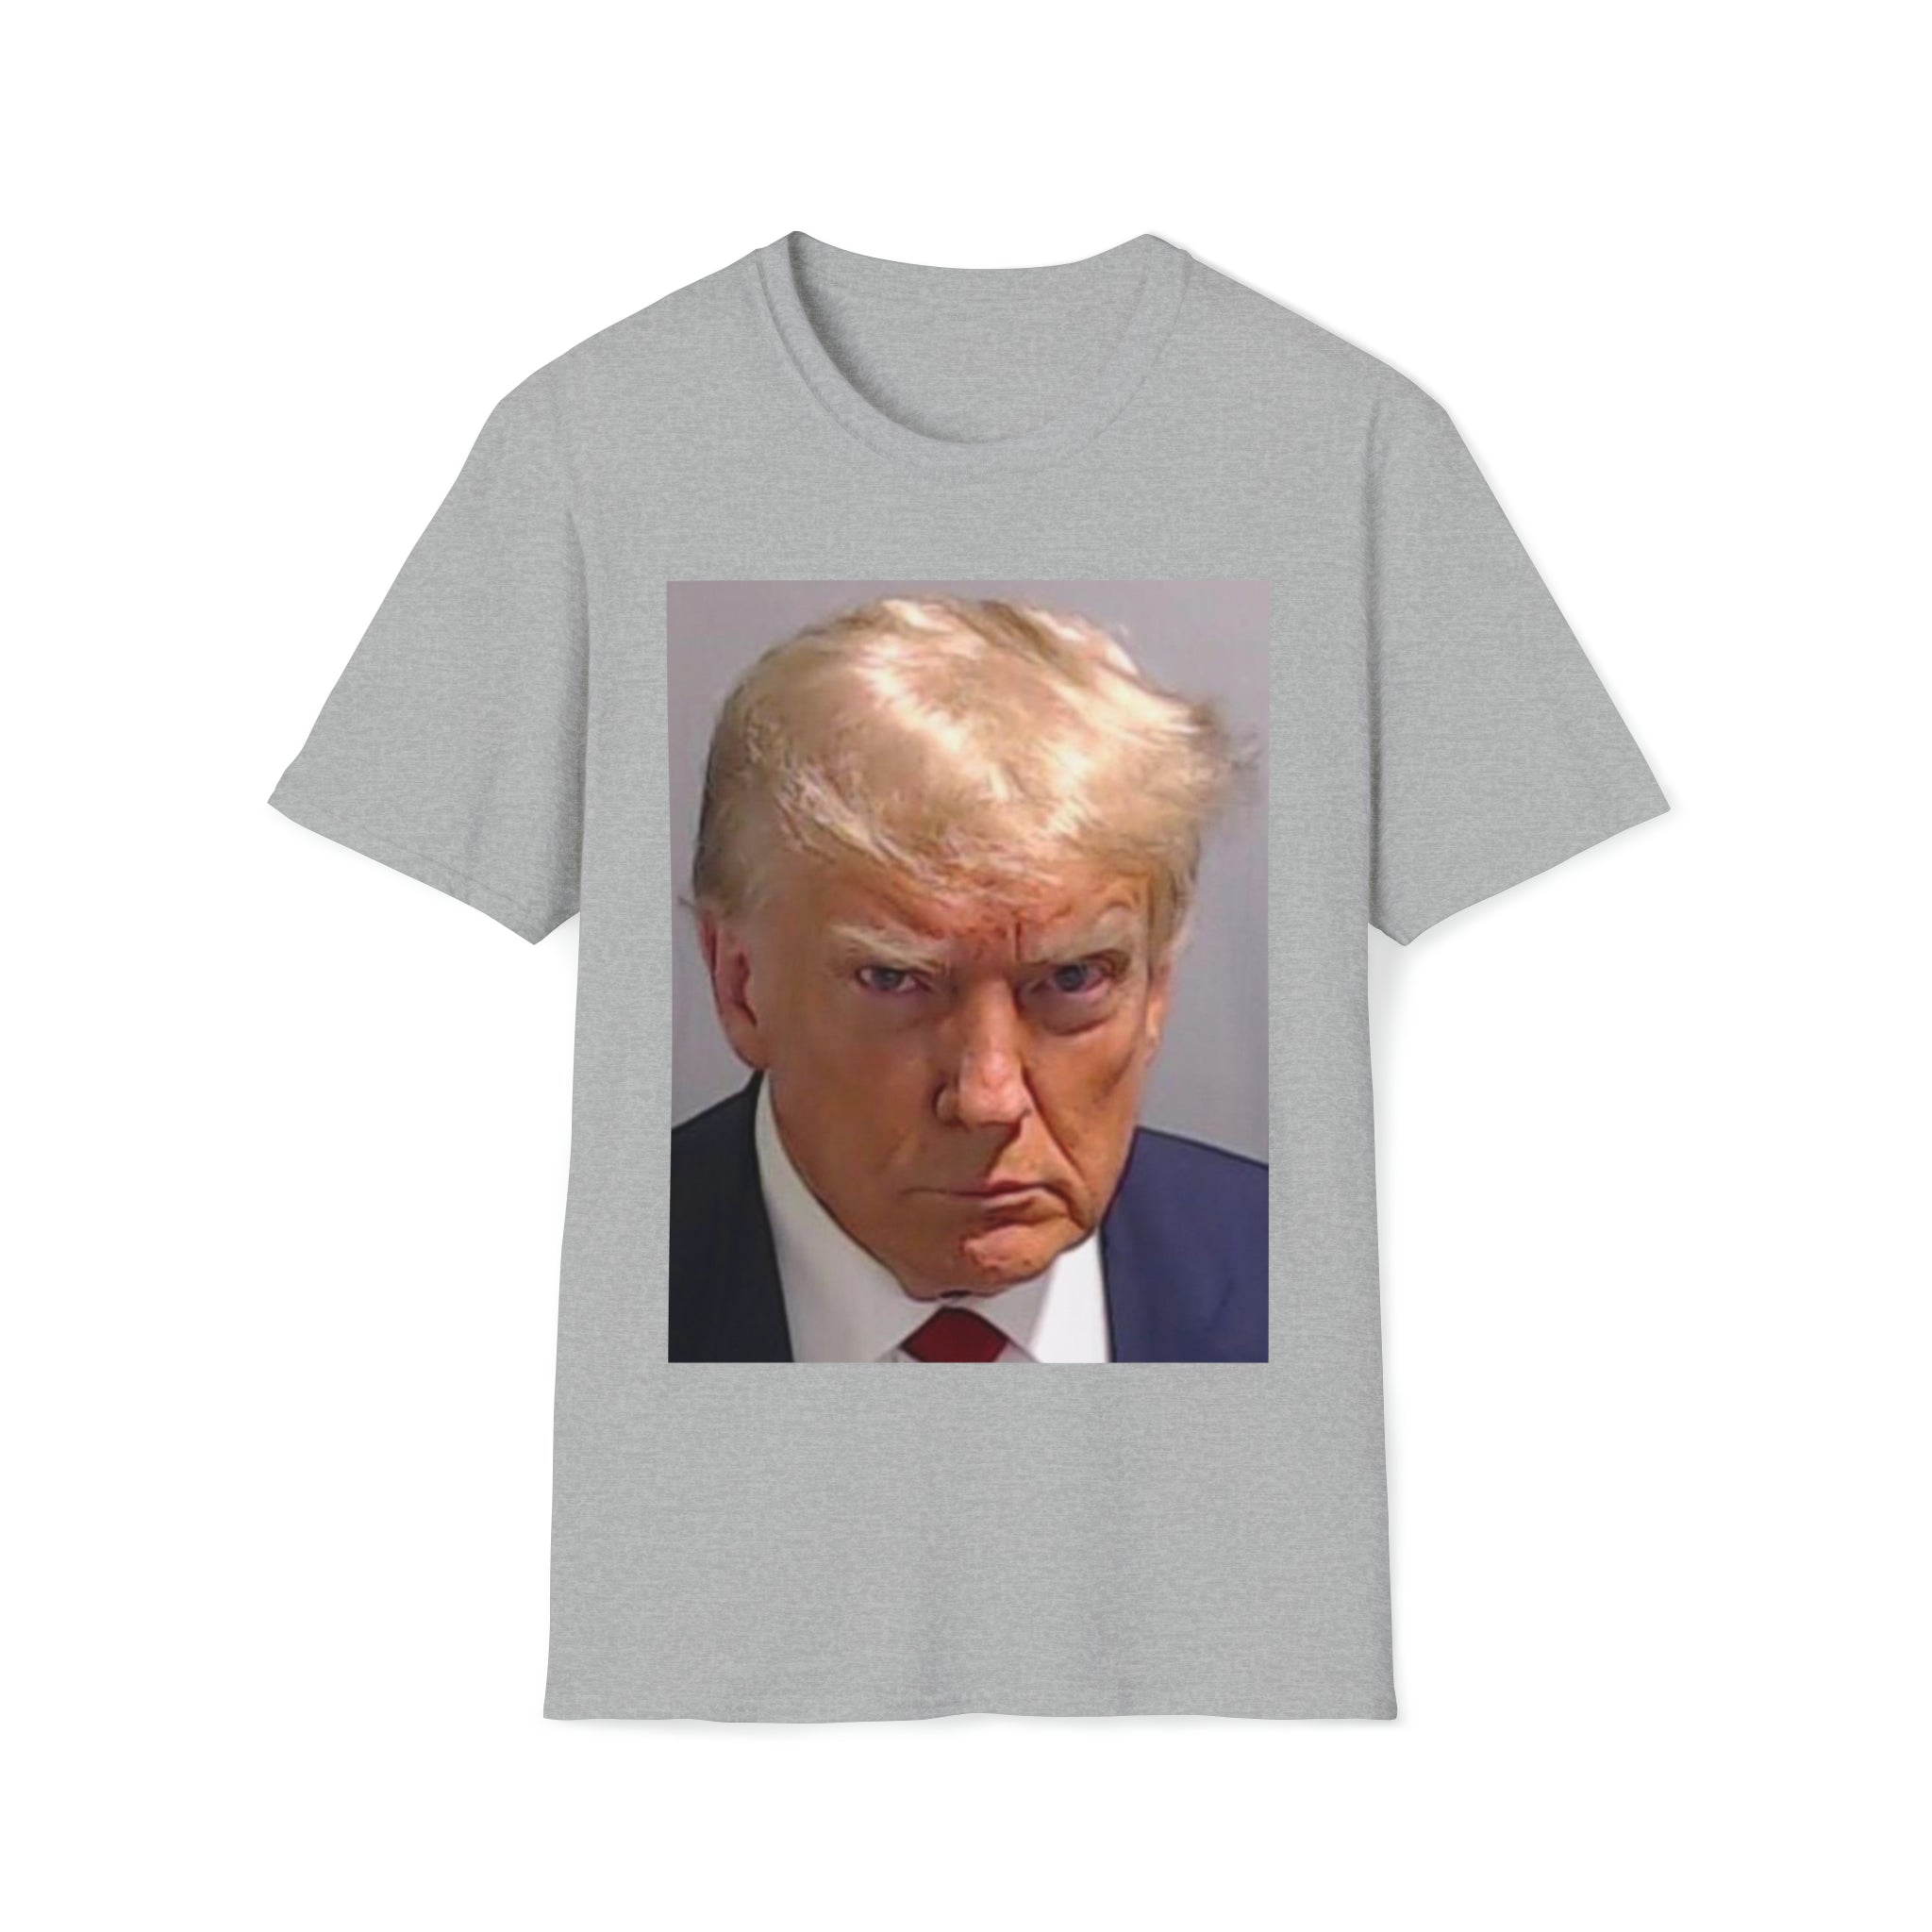 Trump Mug-Shot Tshirt